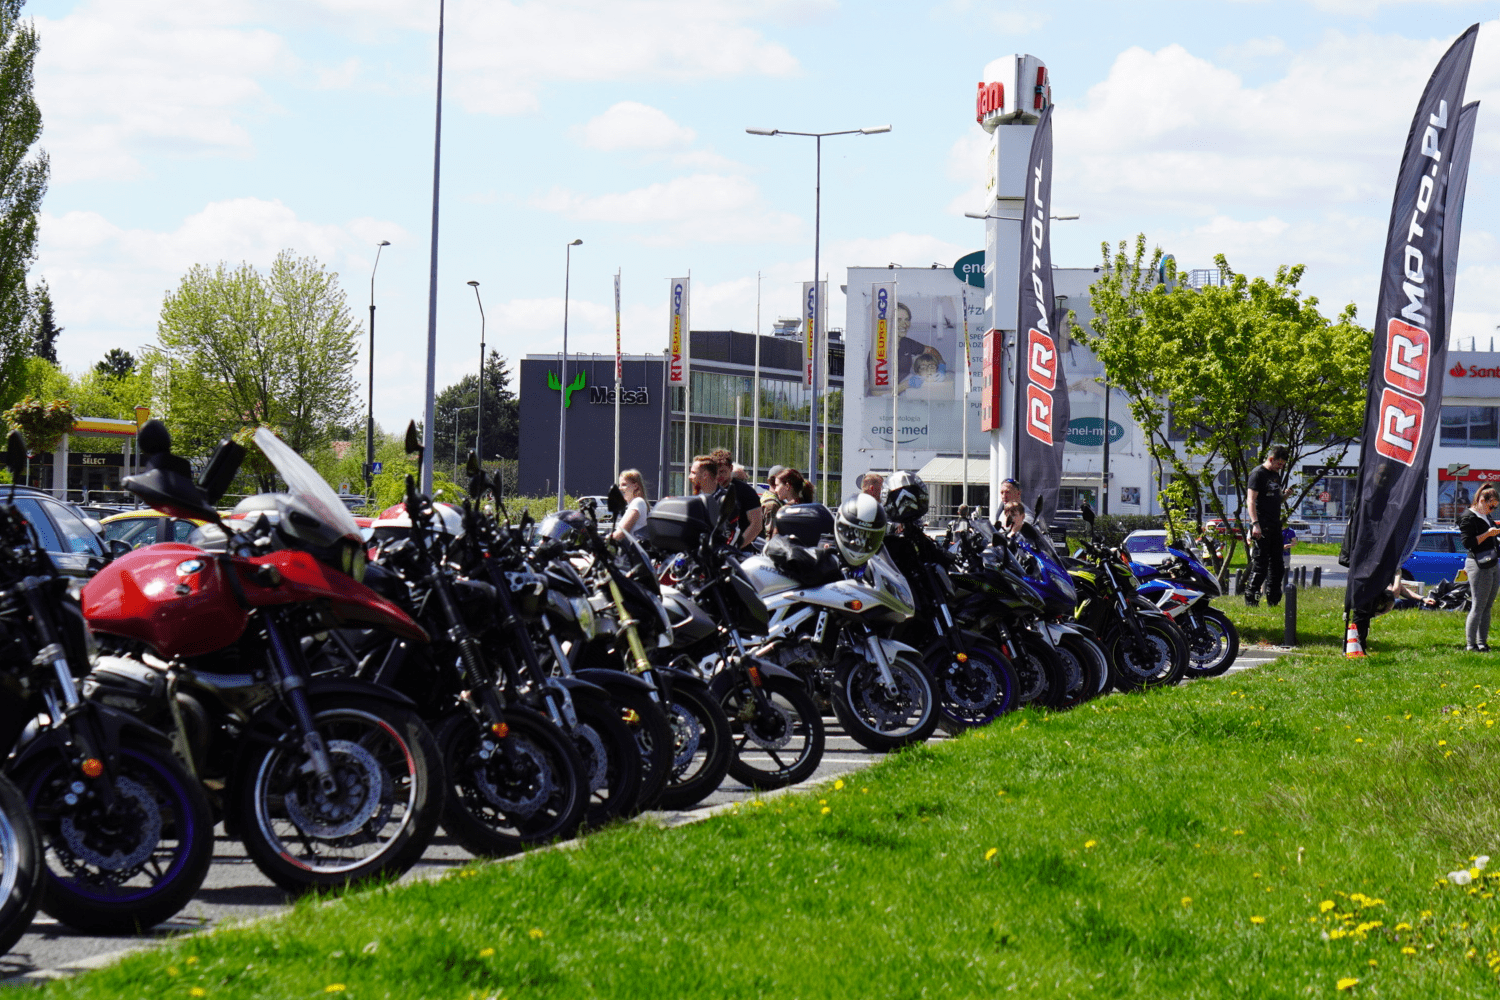 Moto Piknik w RRmoto - Największym sklepie motocyklowym w Warszawie